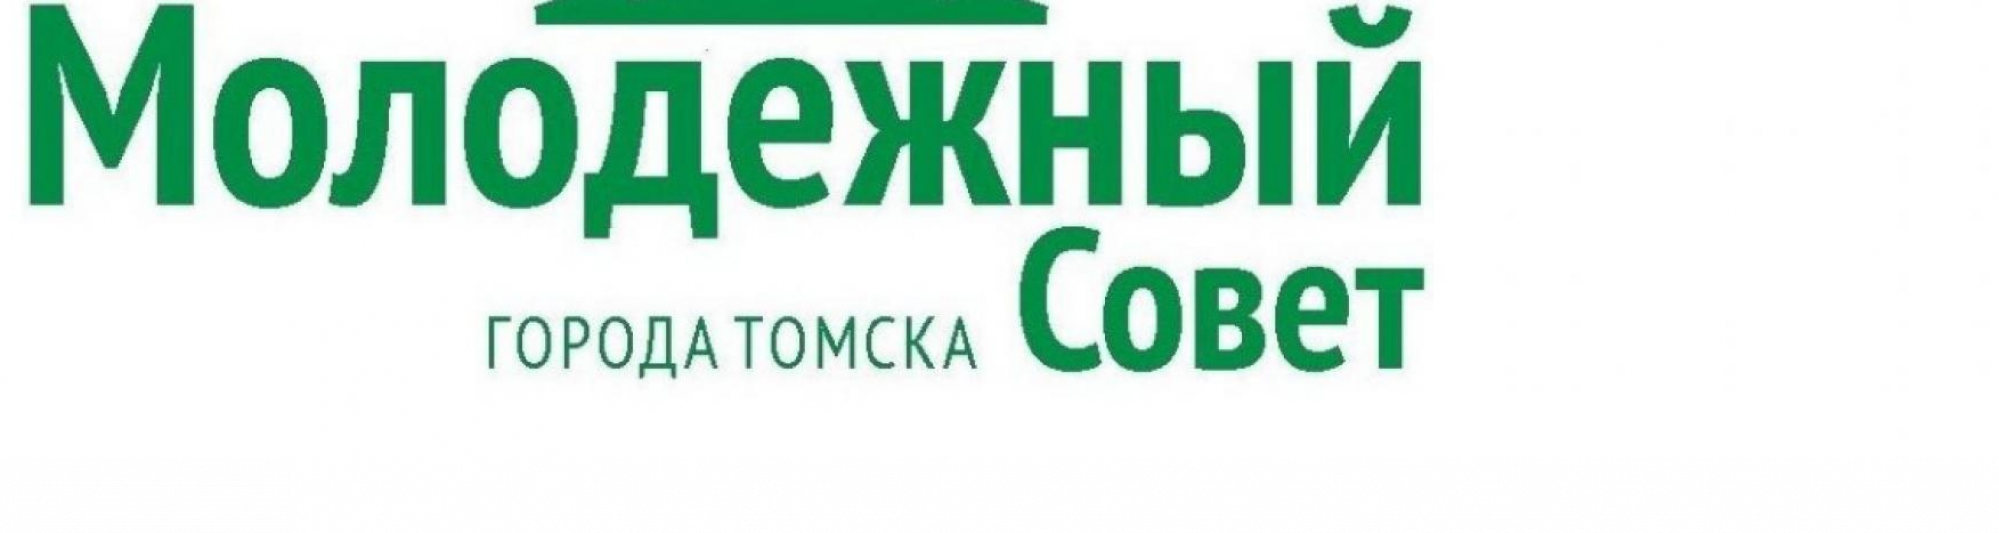 Депутаты сформировали Молодежный Совет Томска